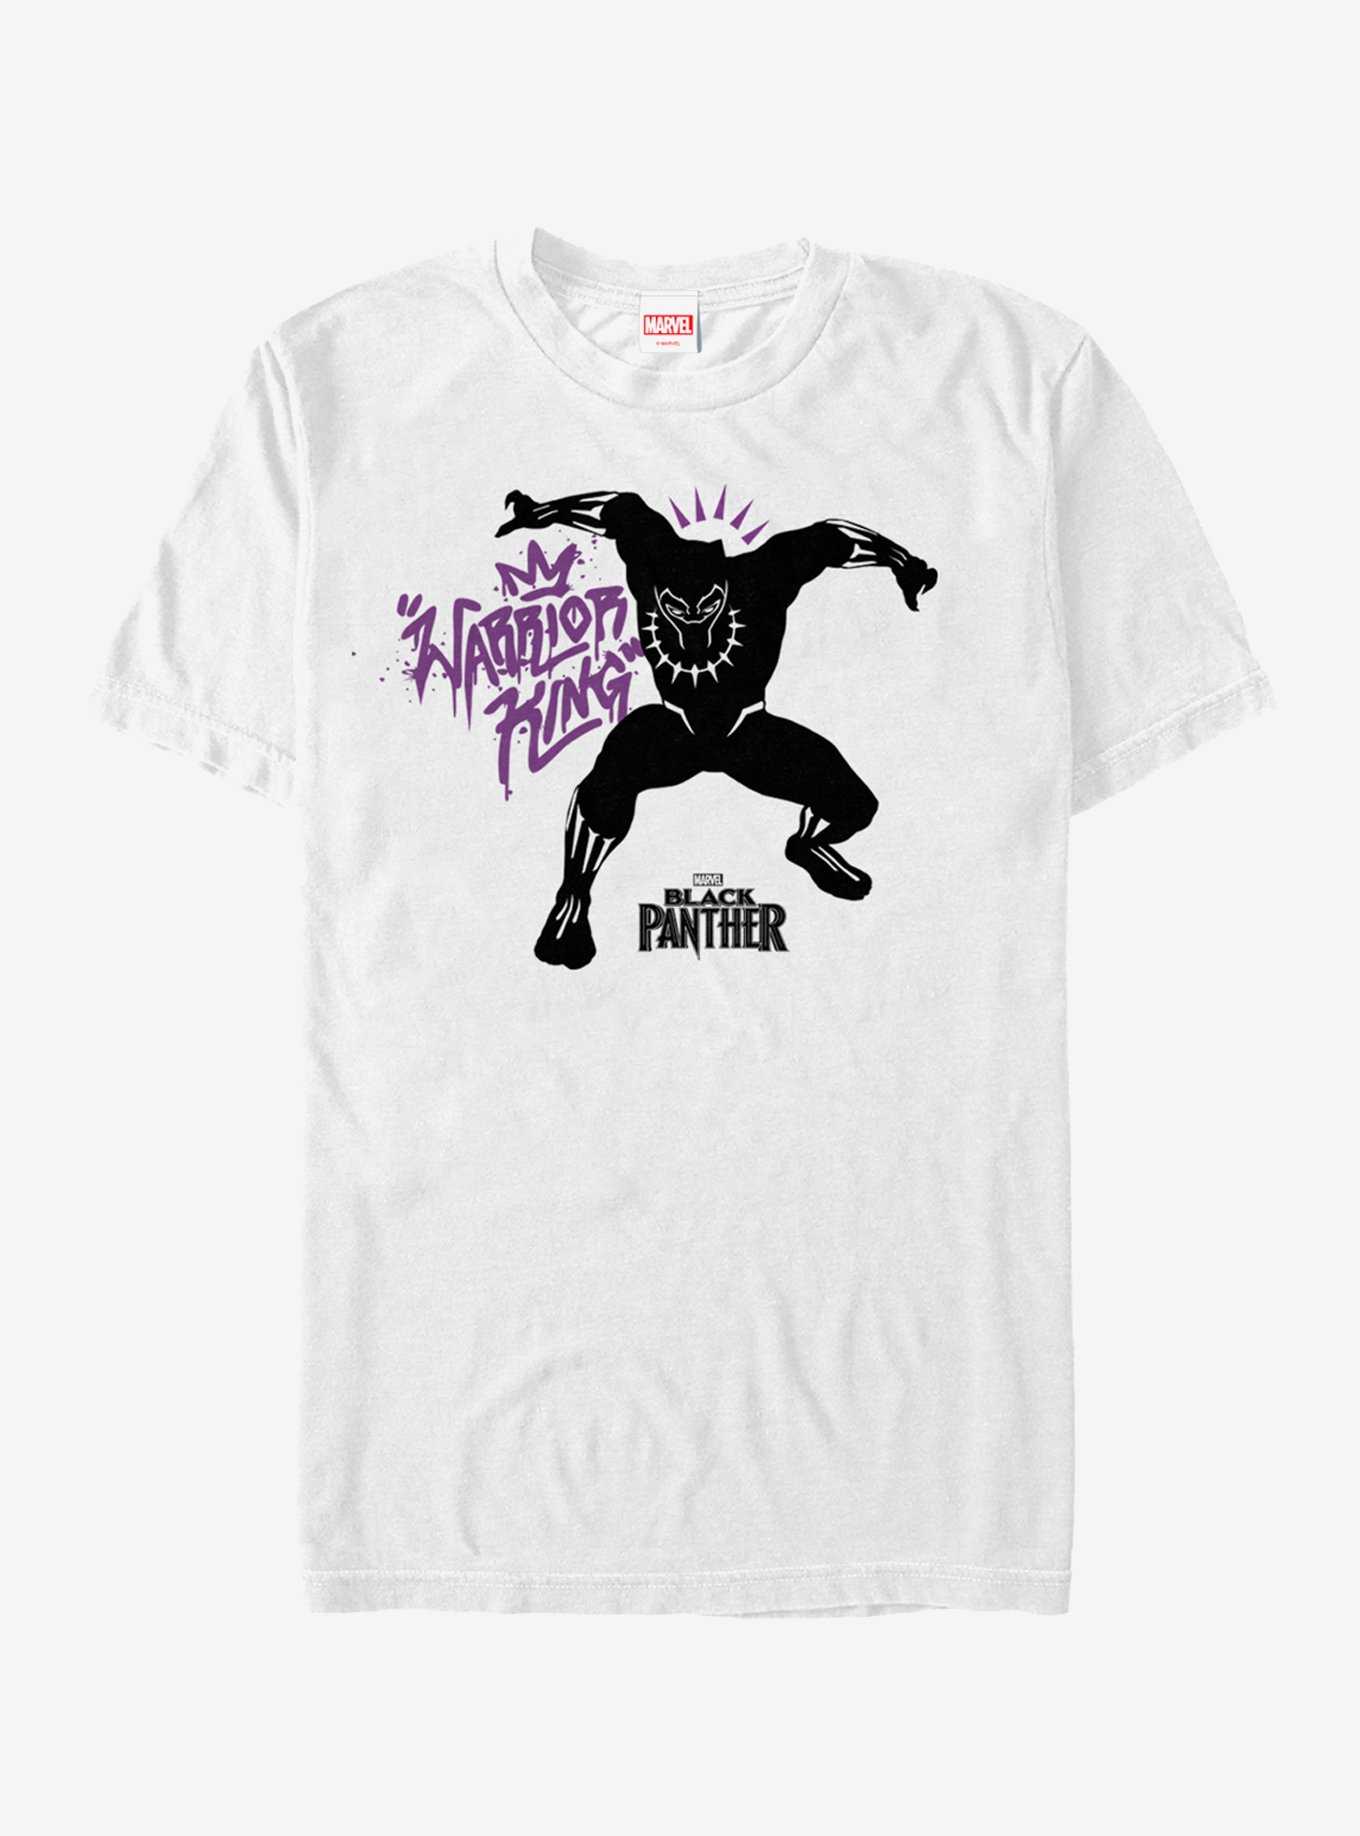 Marvel Black Panther 2018 Warrior King T-Shirt, , hi-res